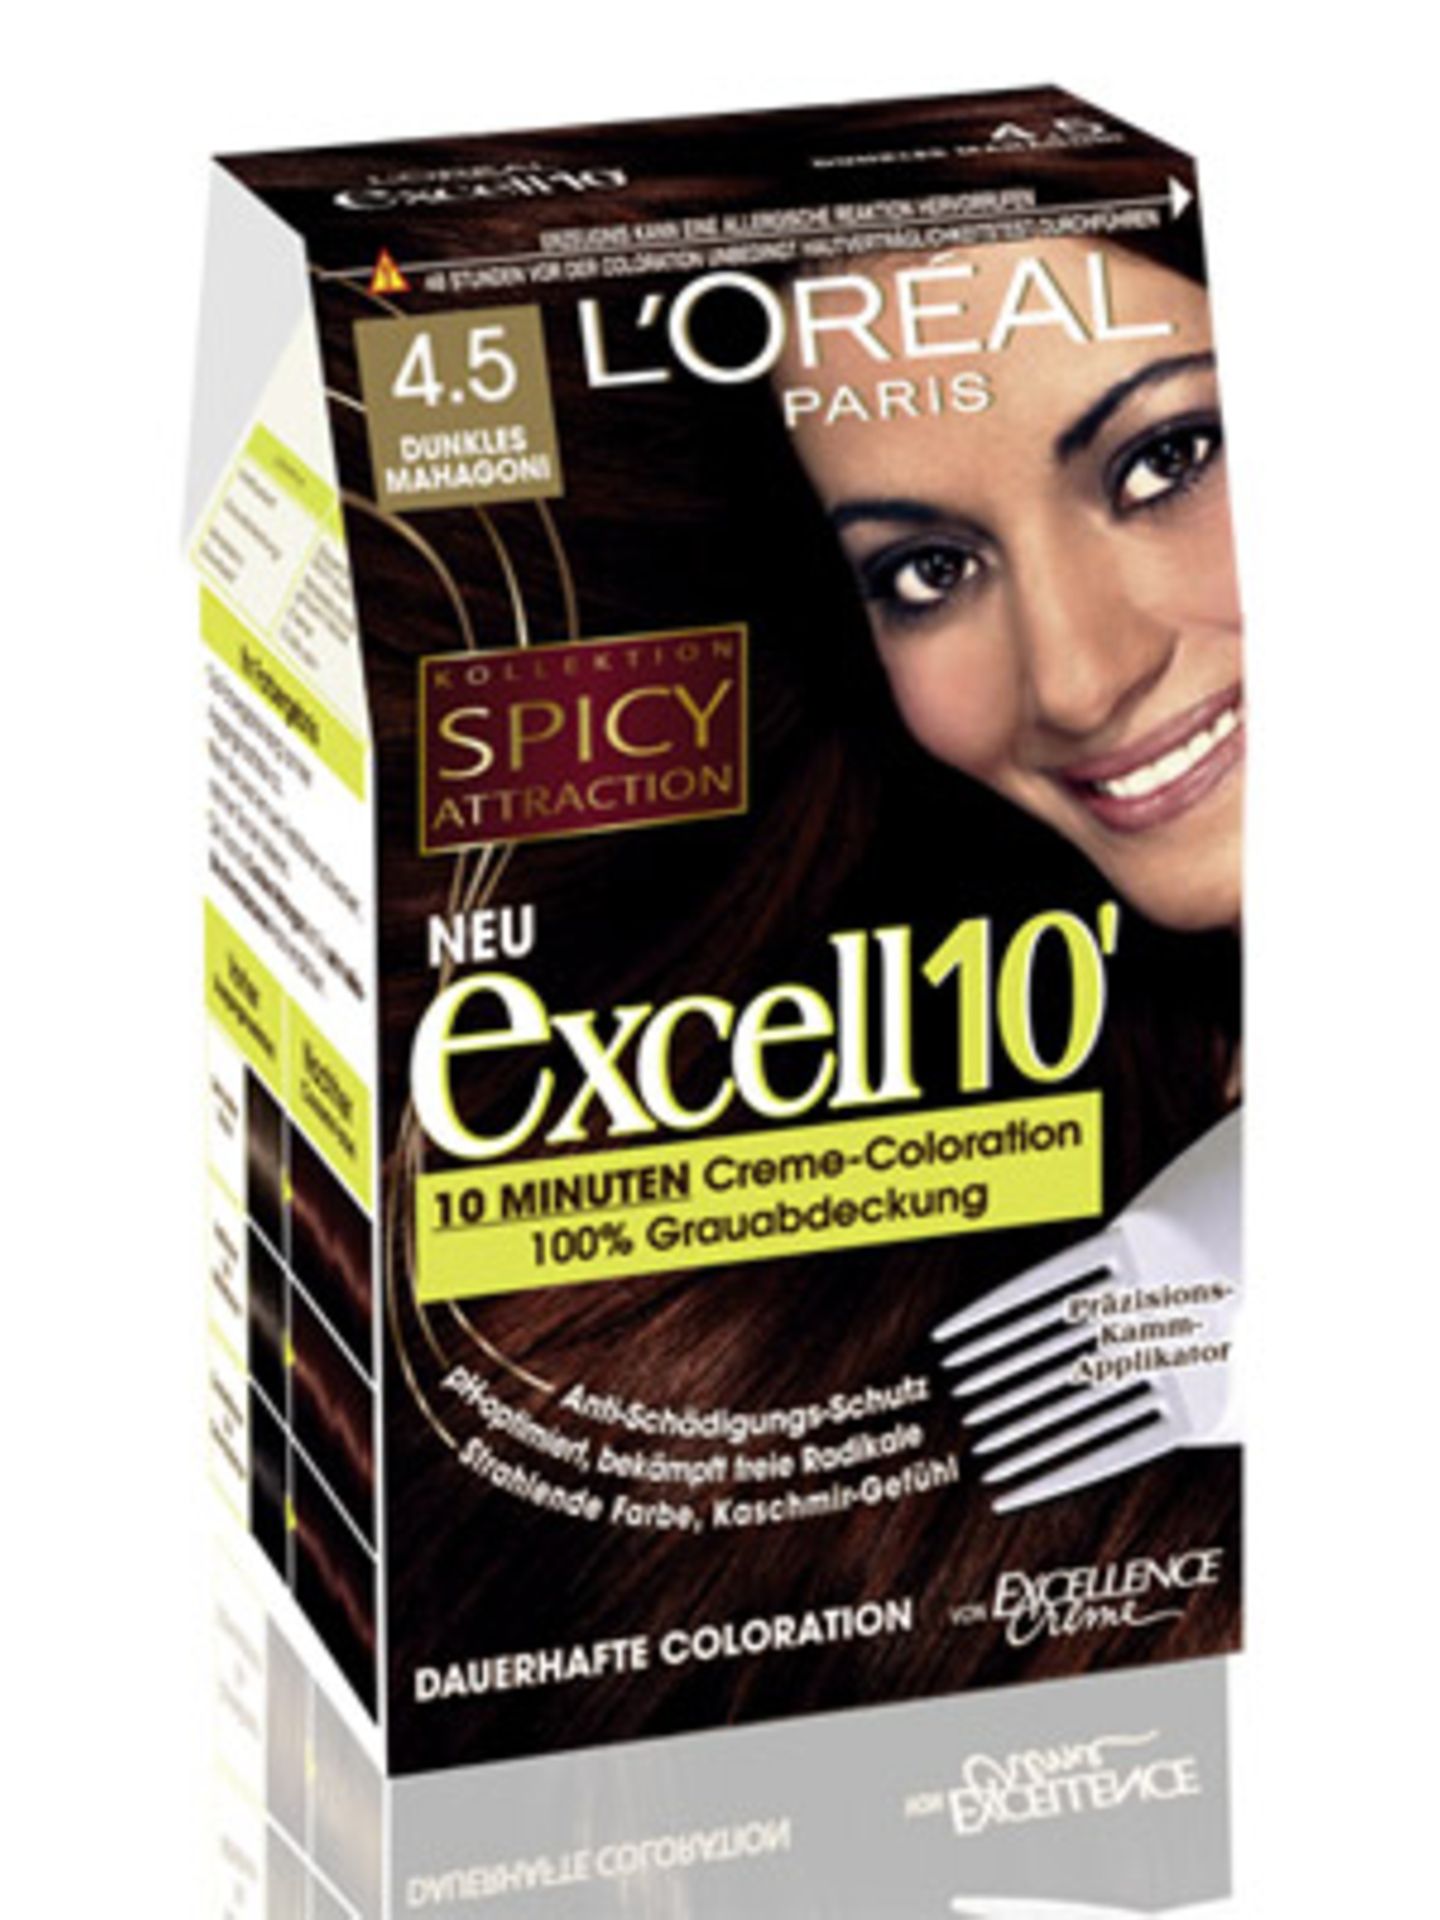 Die "Excell 10" Creme-Coloration von L'Oréal verspricht ein glänzendes Farbergebnis schon nach 10 Minuten. Um 8 Euro.